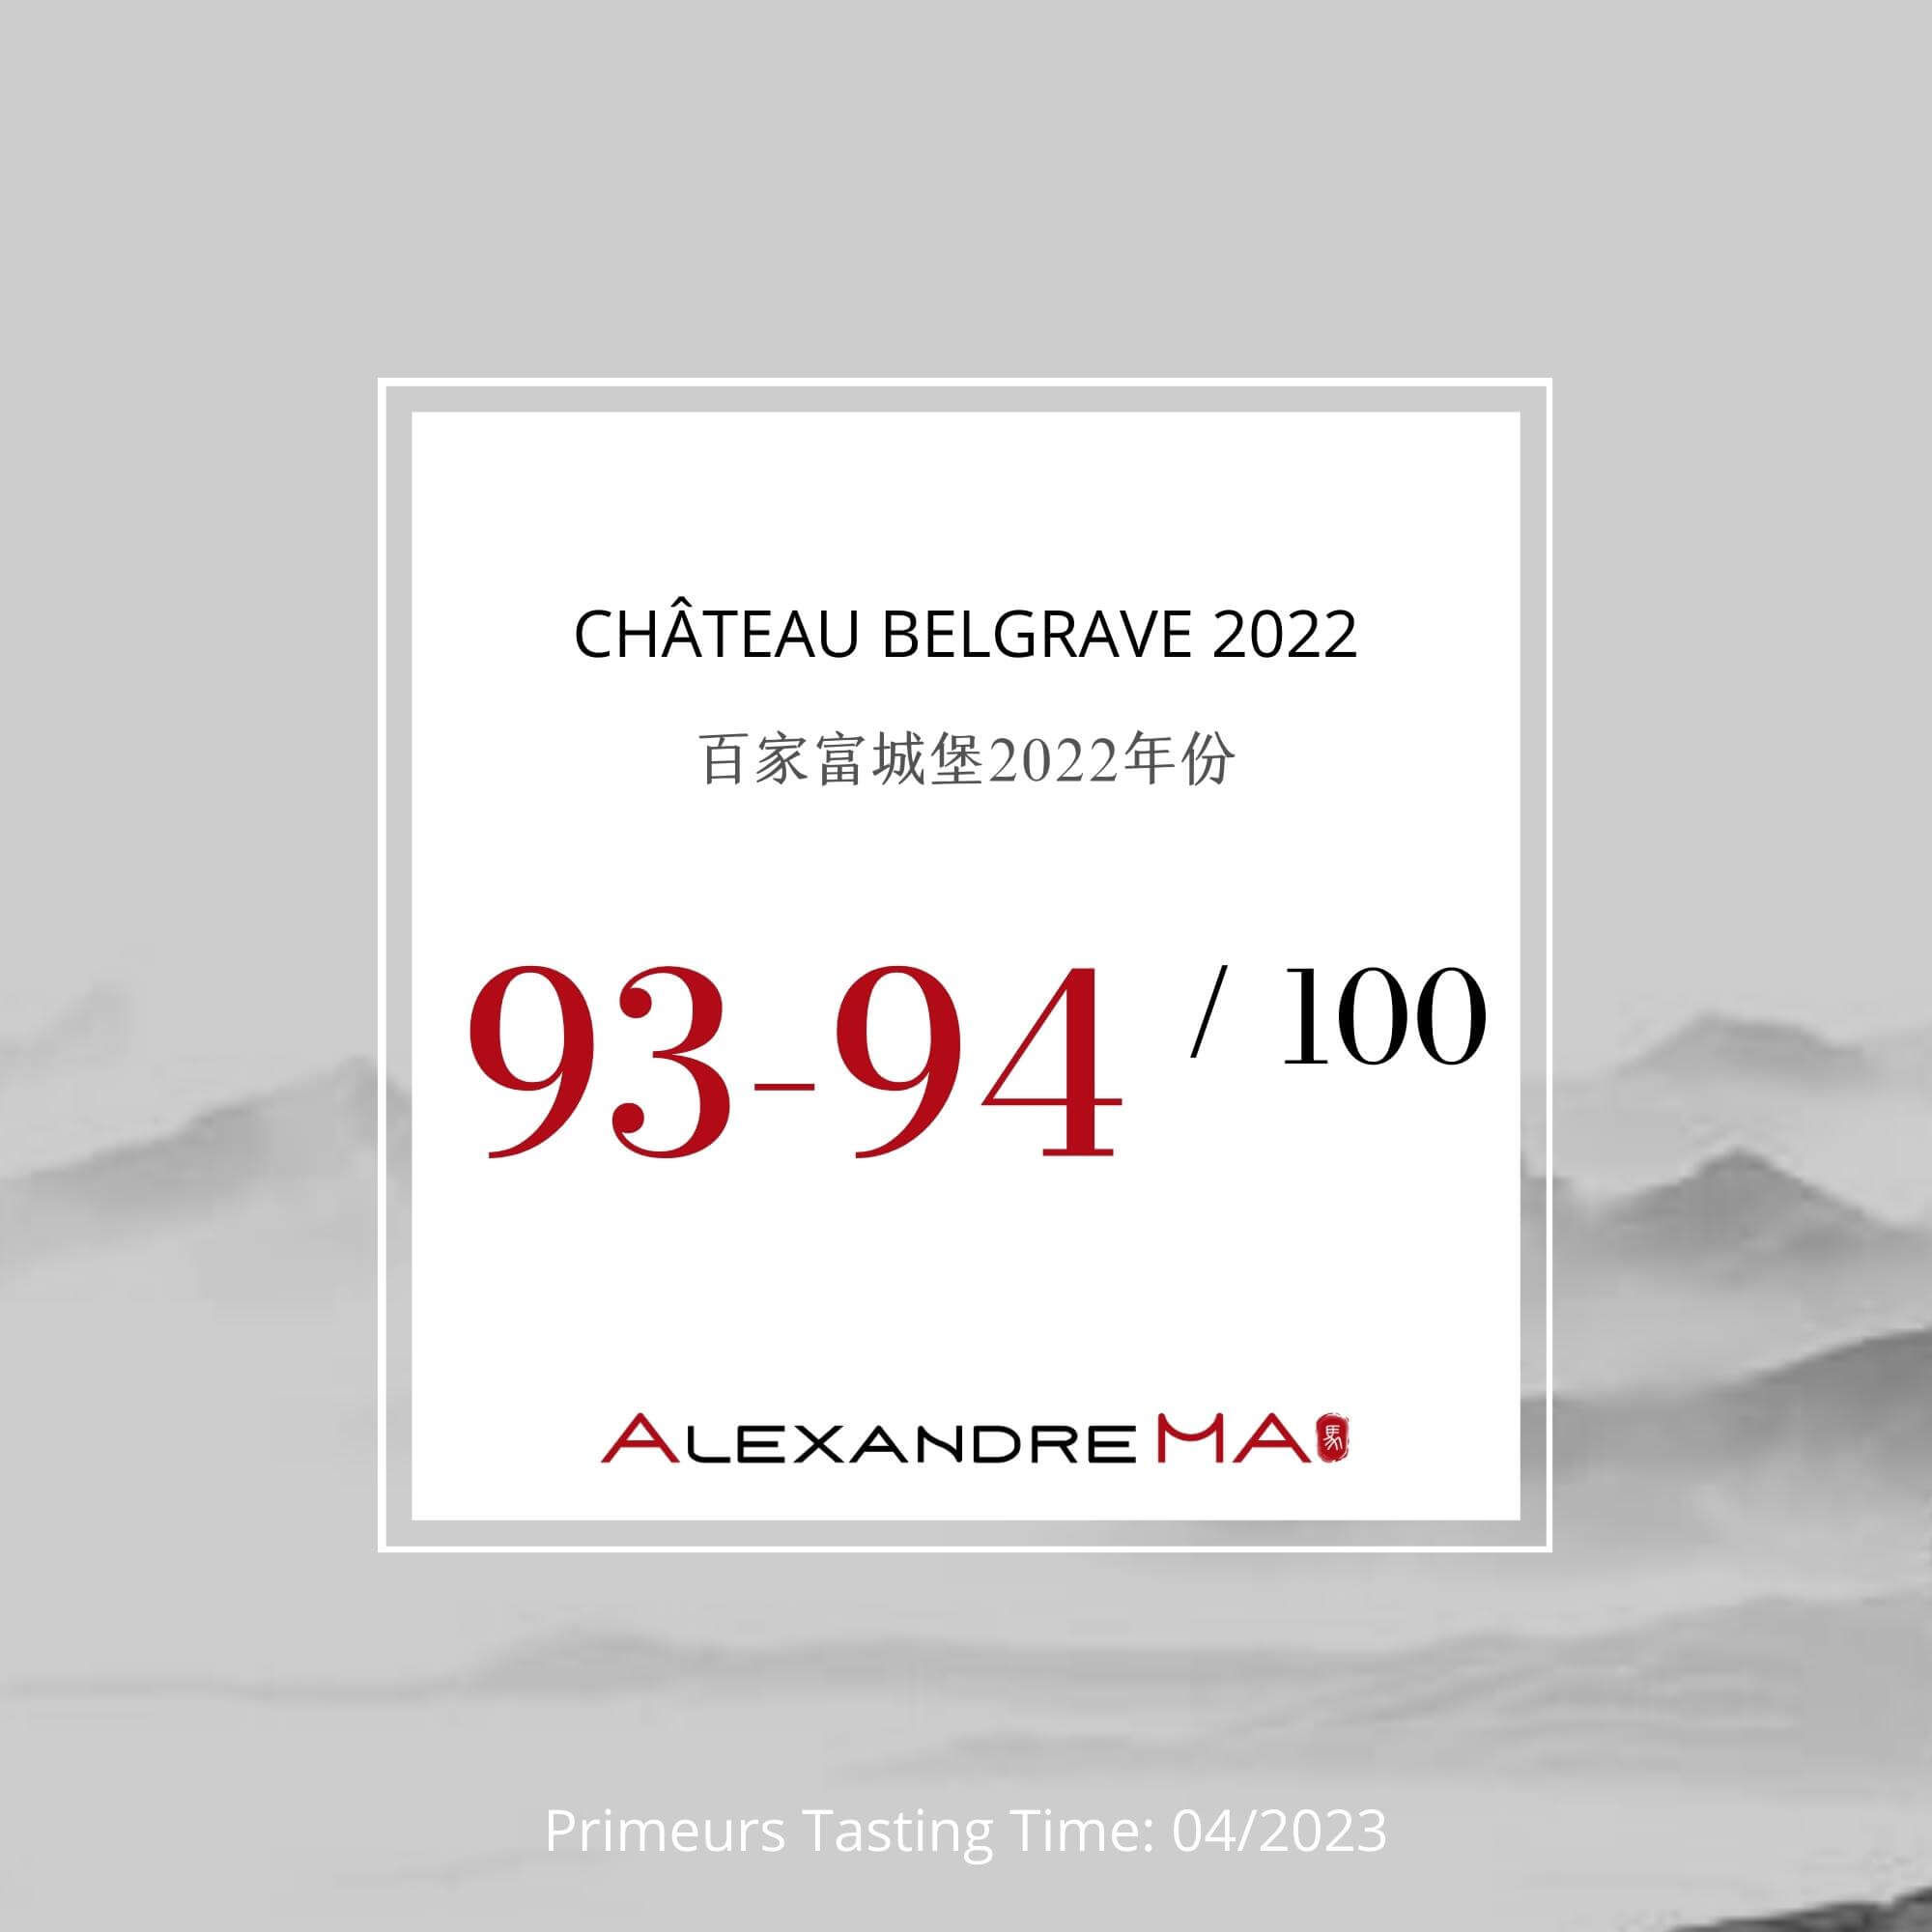 Château Belgrave 2022 Primeurs 百家富城堡 - Alexandre Ma